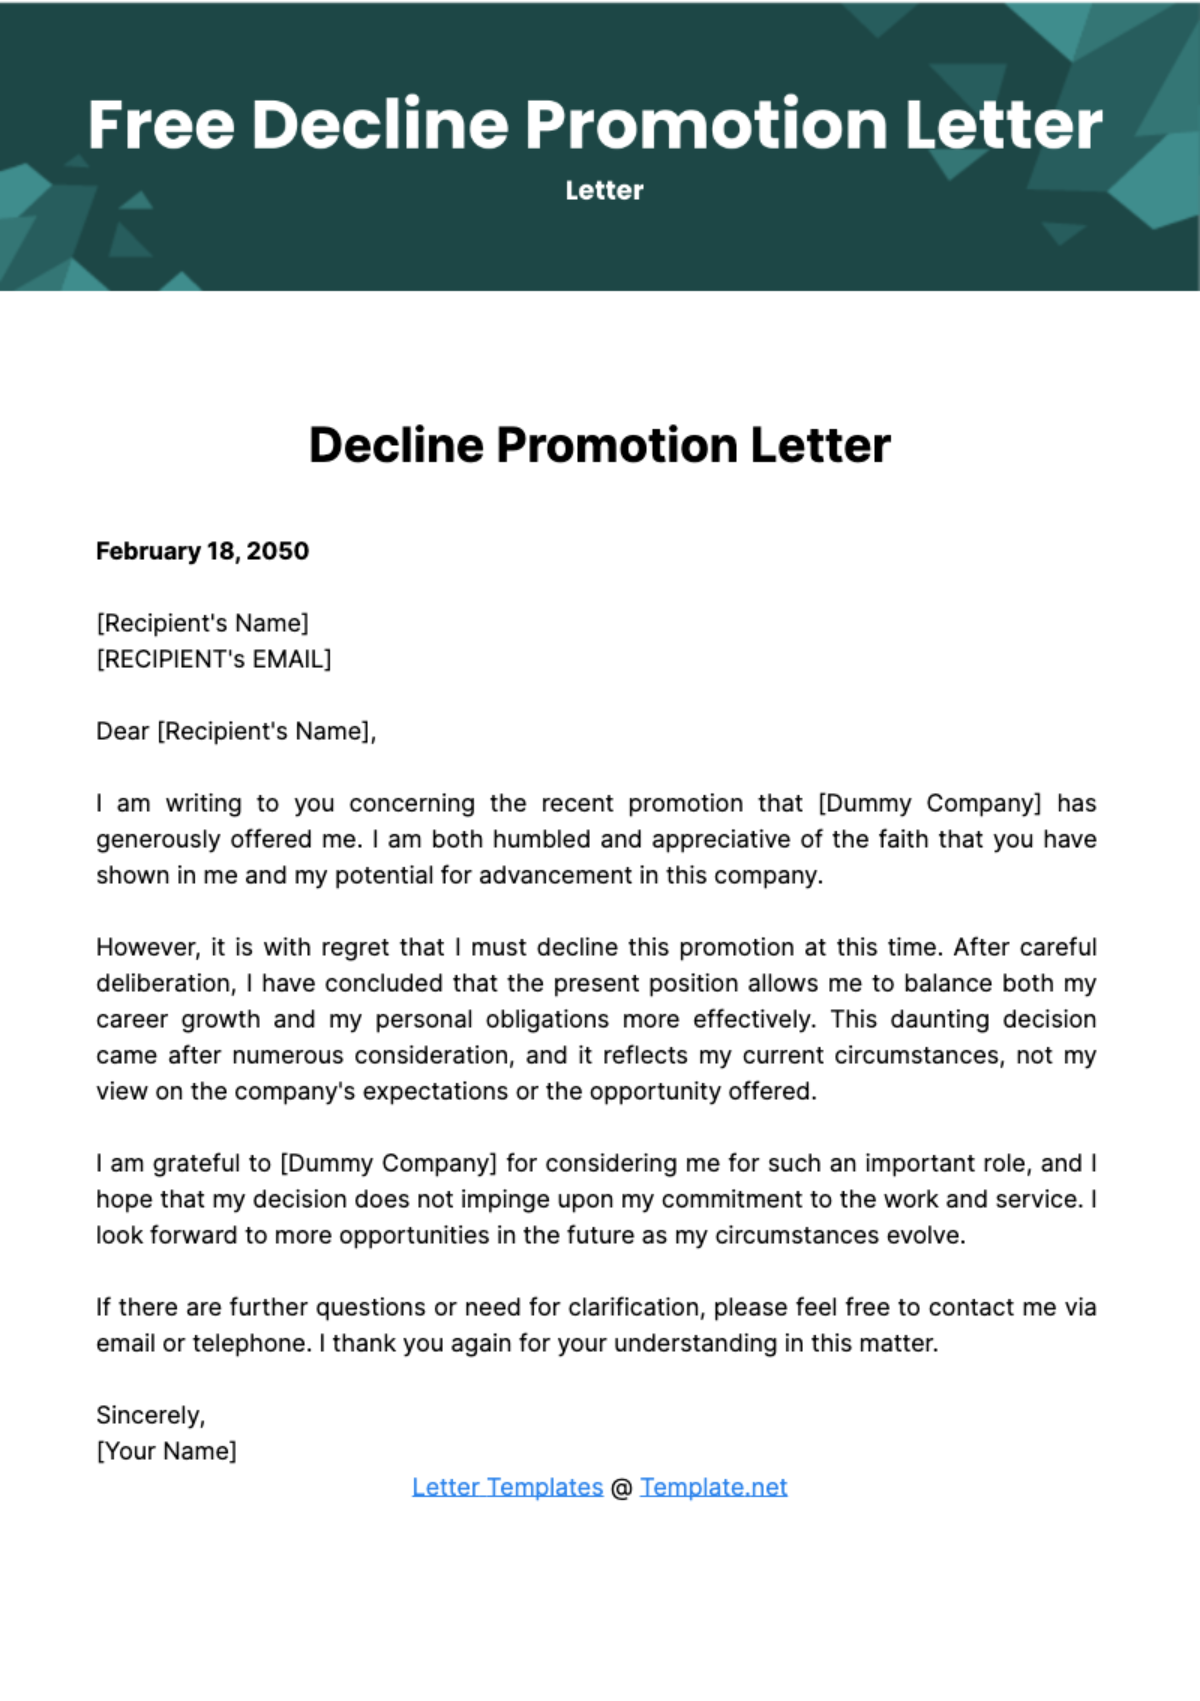 Decline Promotion Letter Template